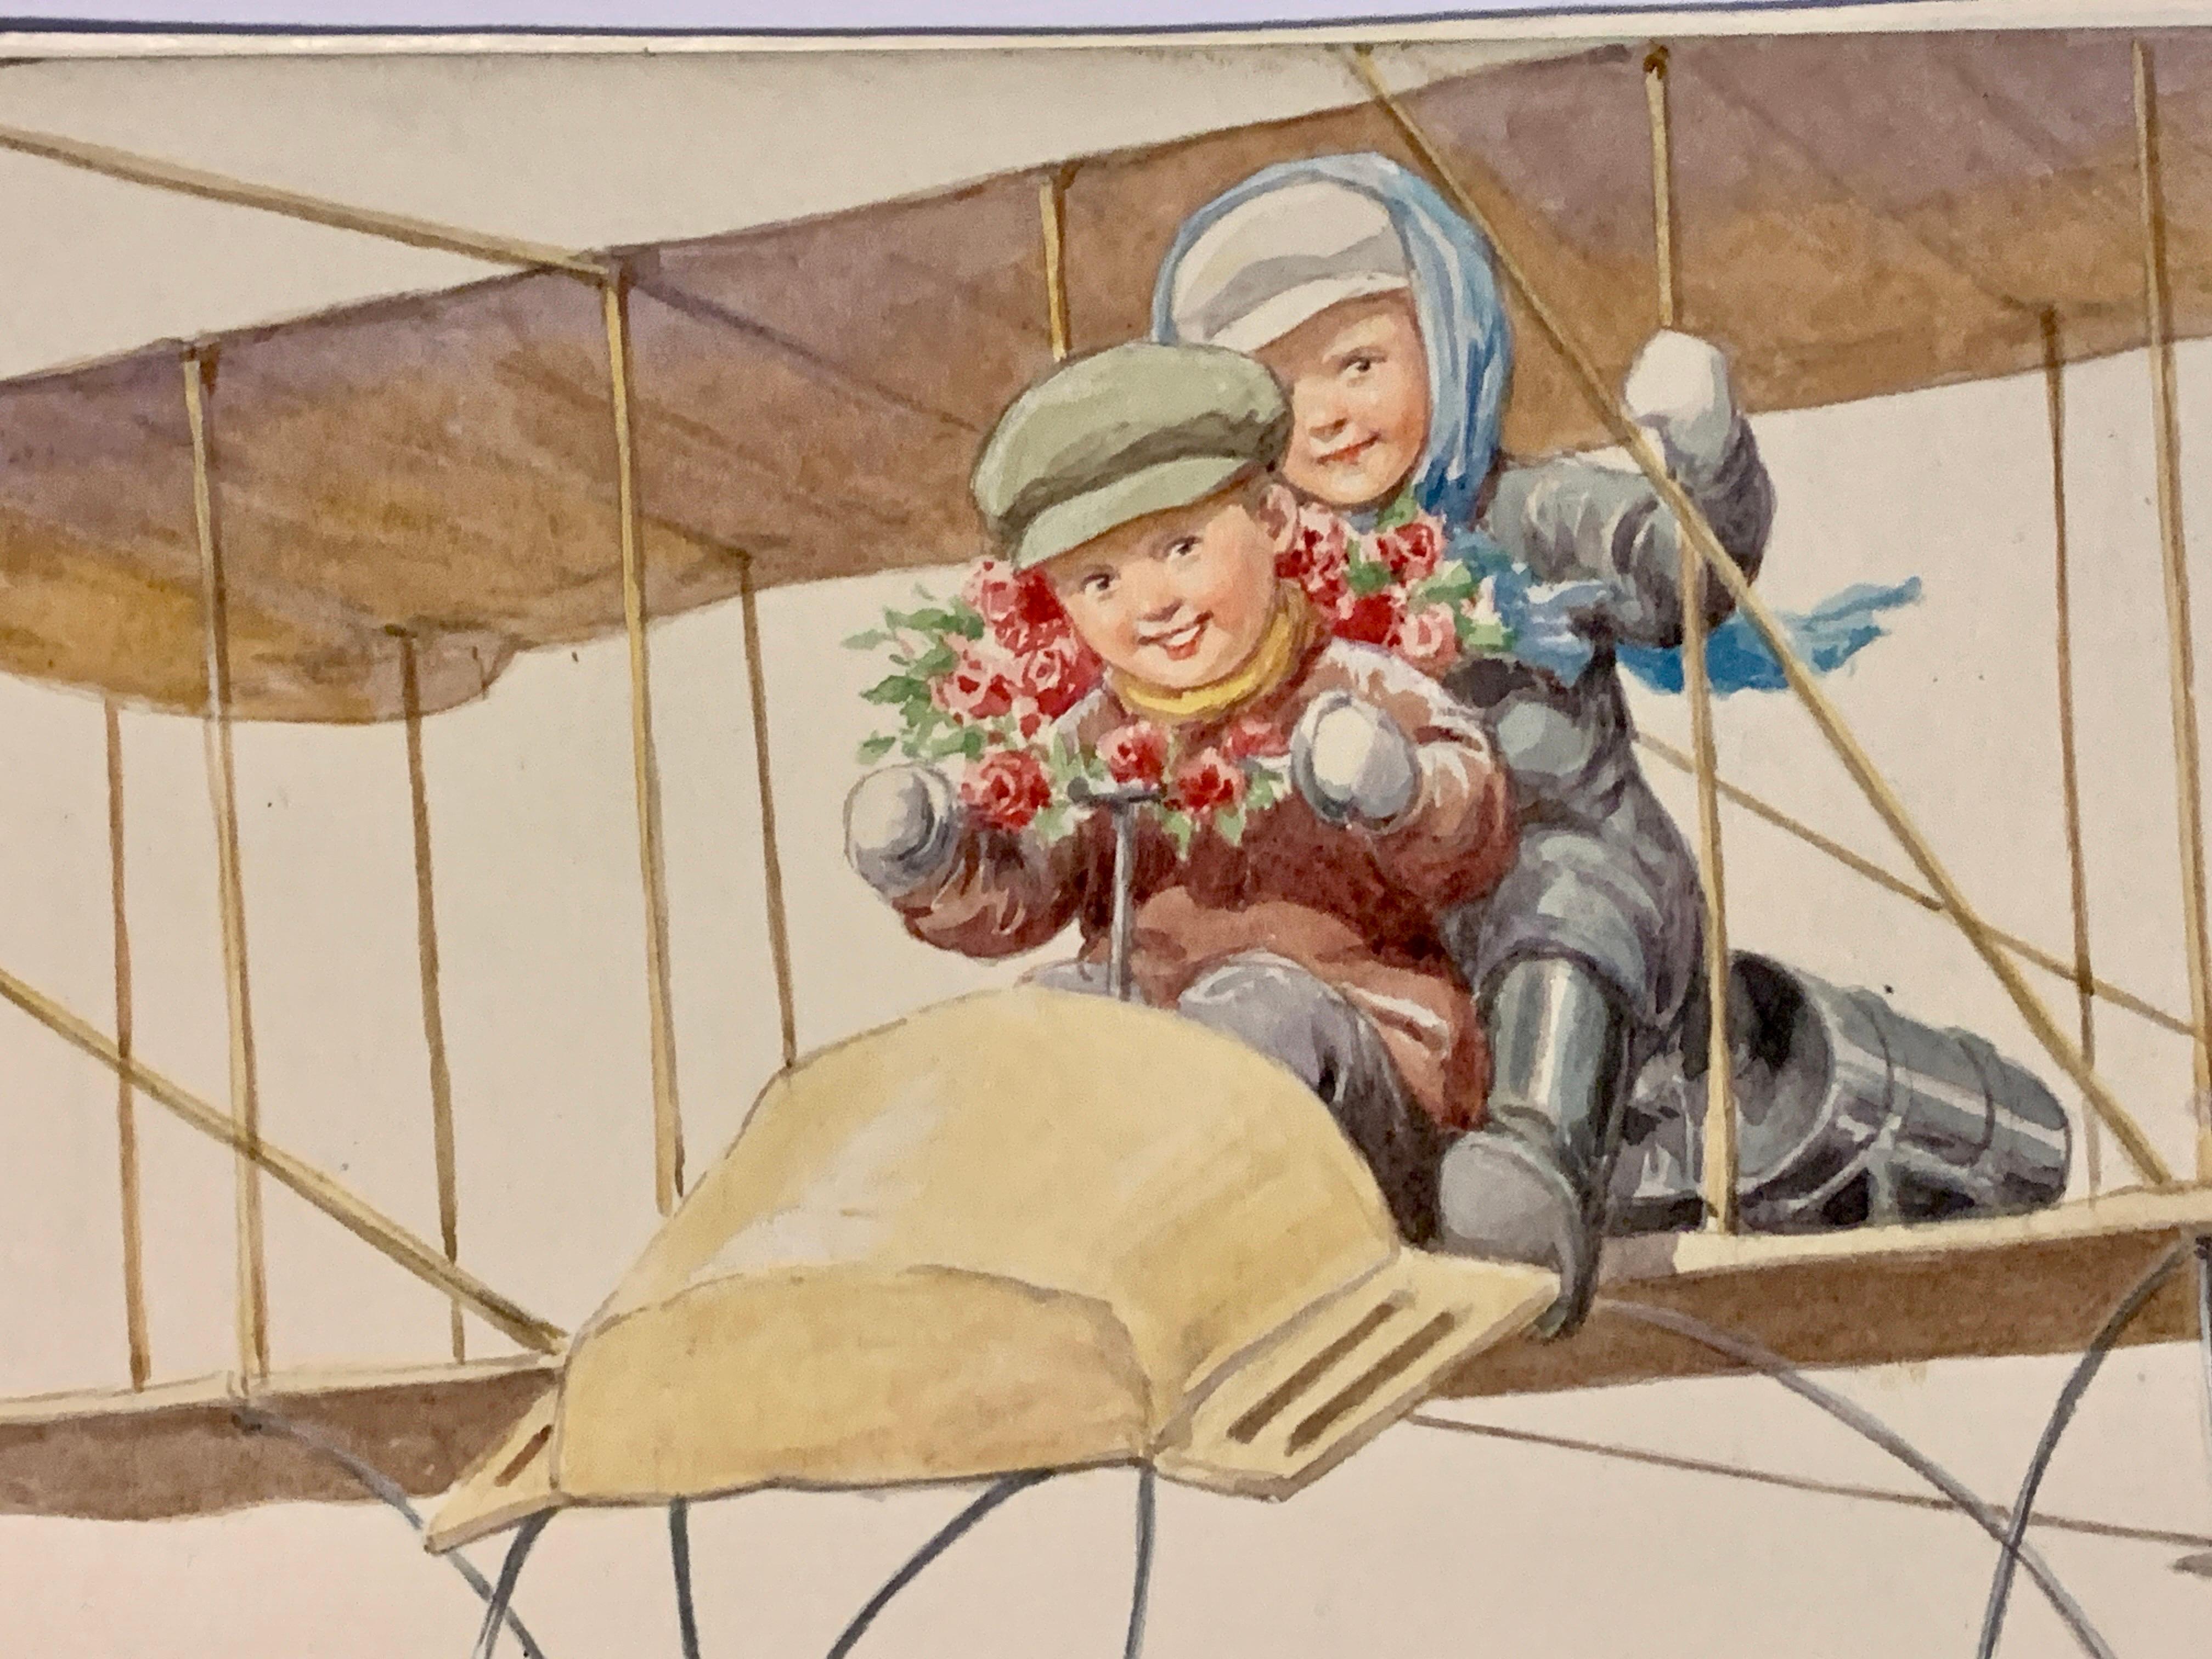 Deutsche Kinder aus dem späten 19. Jahrhundert, die in einem Flugzeug fliegen, (Beige), Landscape Art, von Karl Feiertag